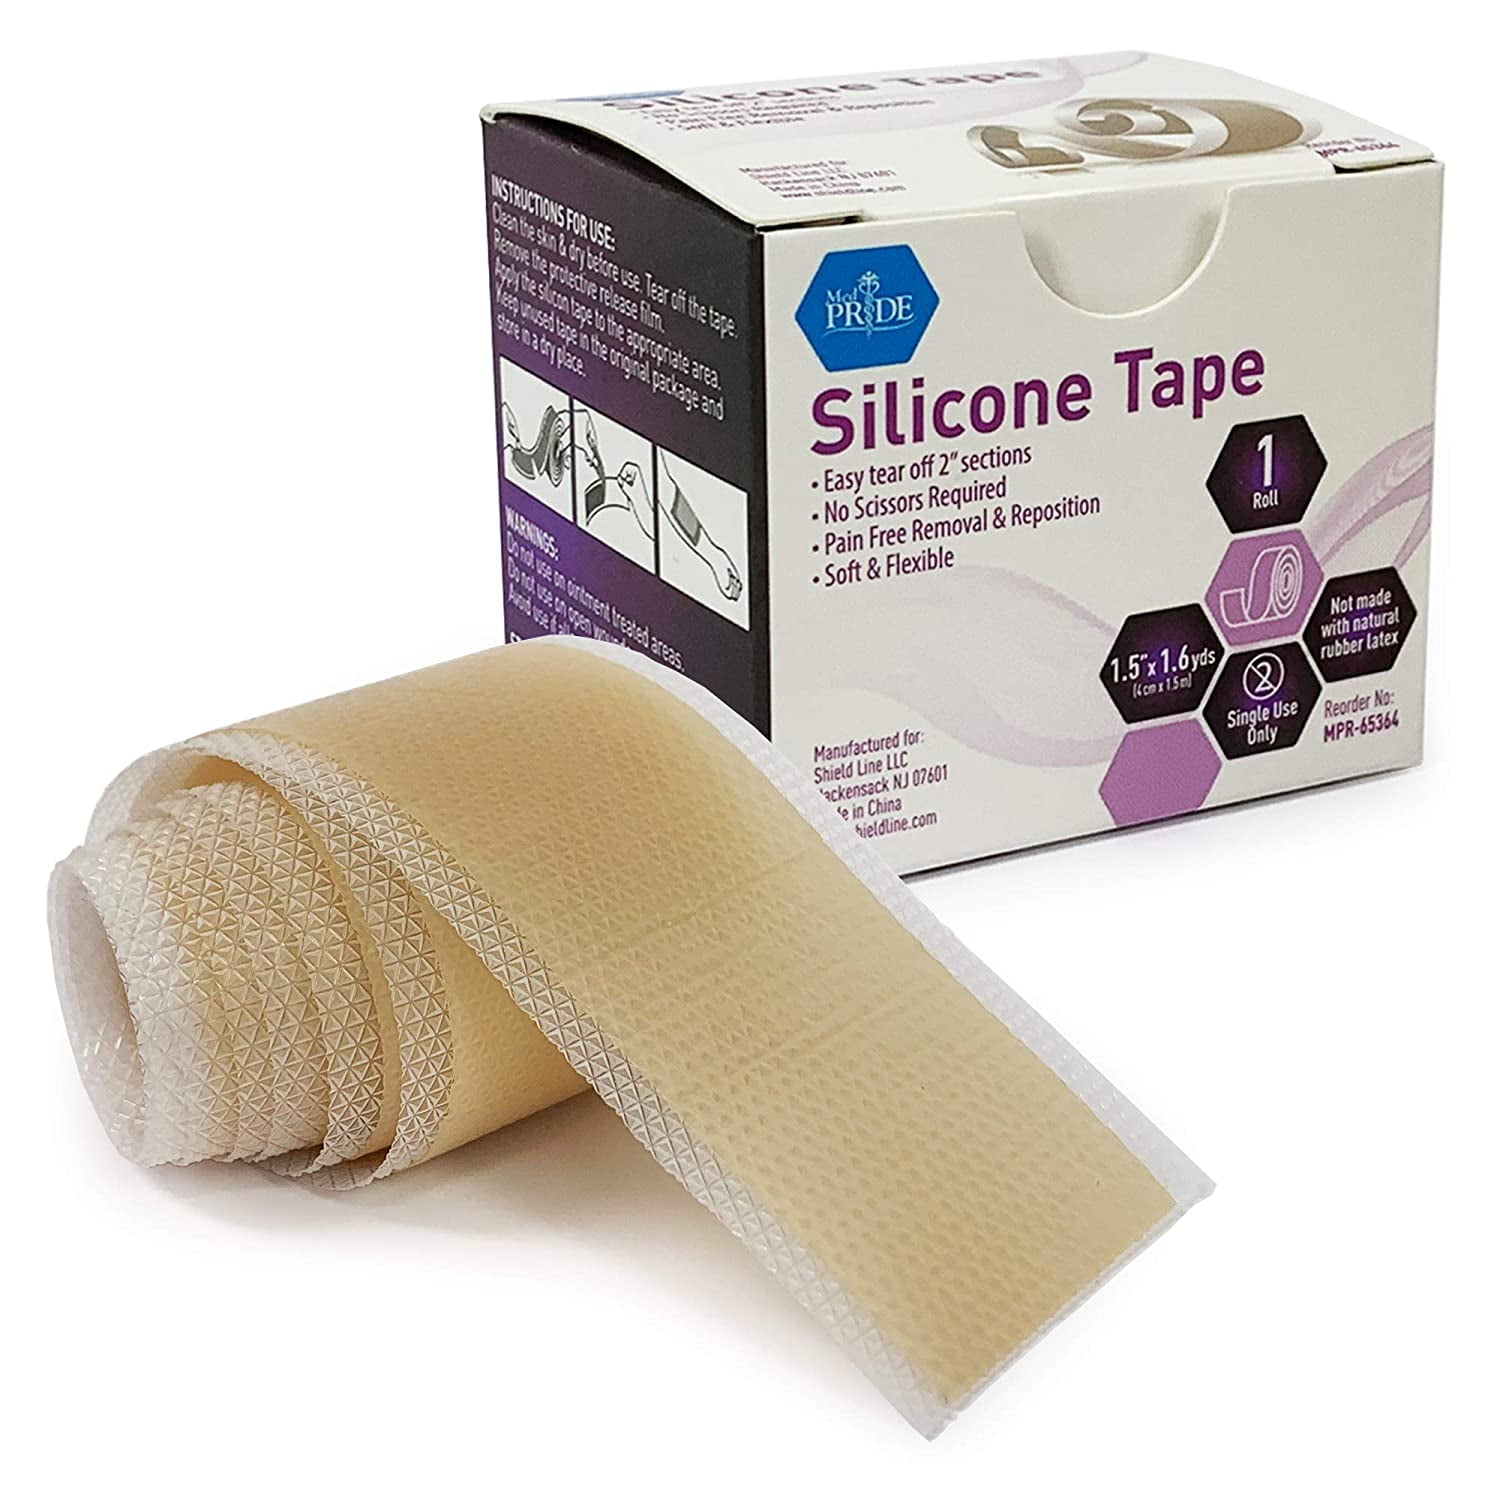 Zinc Oxide Tape Medical Adhesive Bandage - China Zinc Oxide Plaster and  Adhesive Bandage price